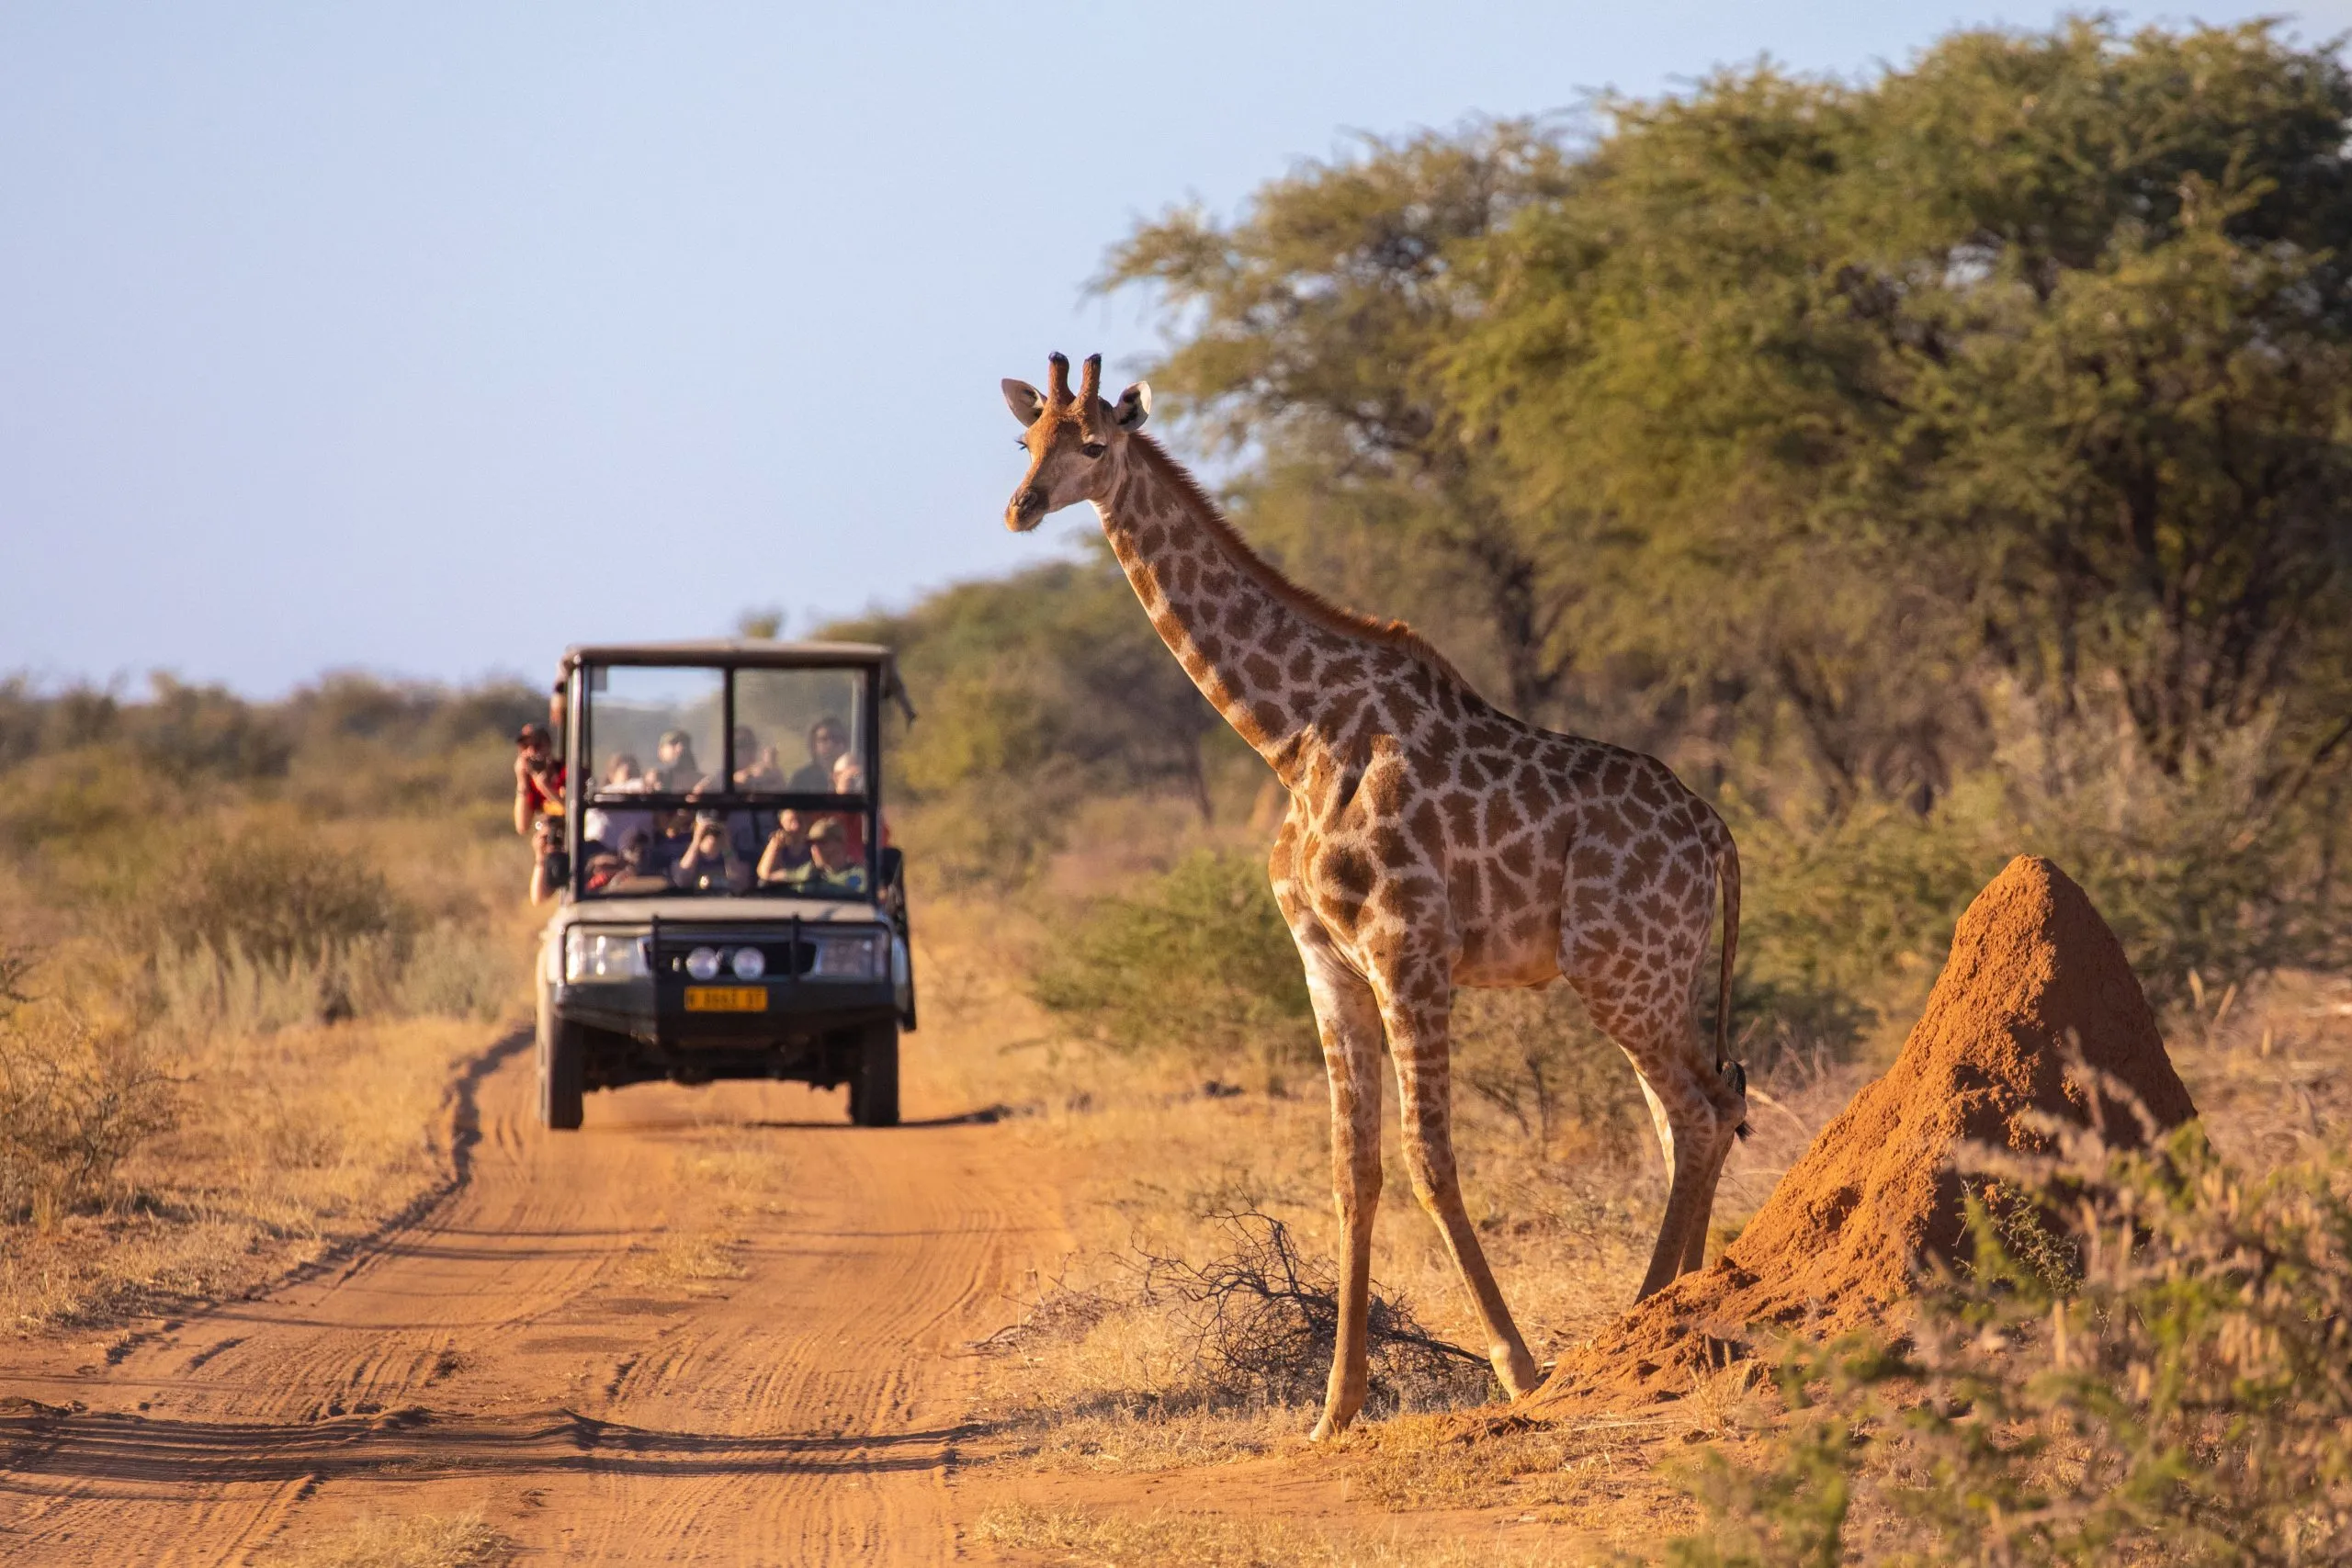 Uma girafa selvagem atravessa uma estrada africana à frente de um veículo de safari com turistas